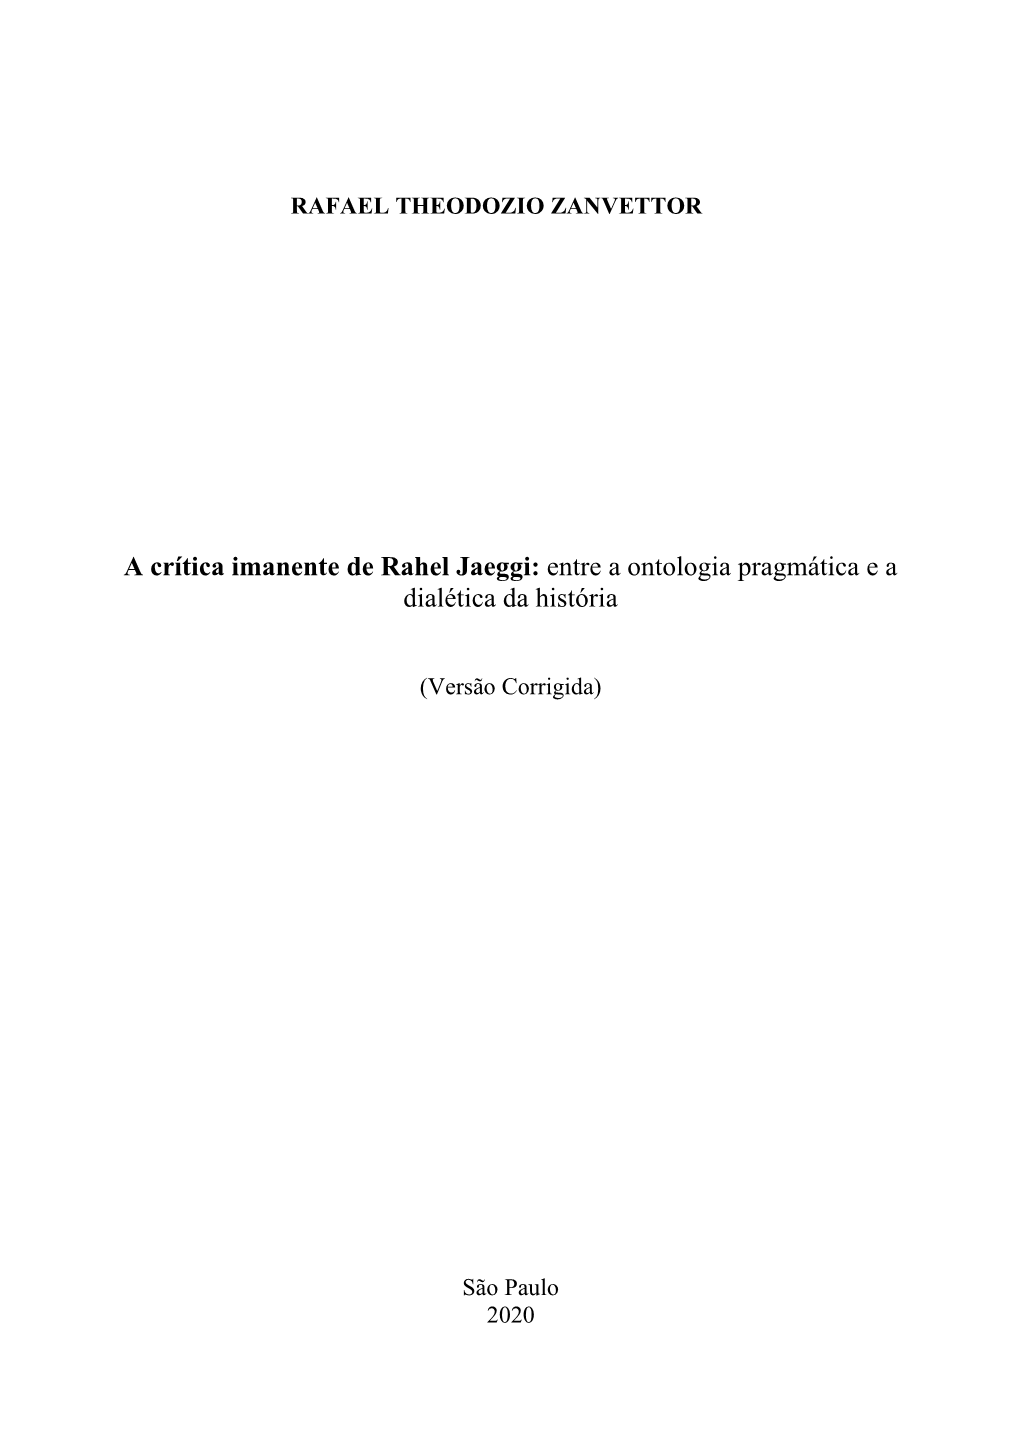 A Crítica Imanente De Rahel Jaeggi: Entre a Ontologia Pragmática E a Dialética Da História